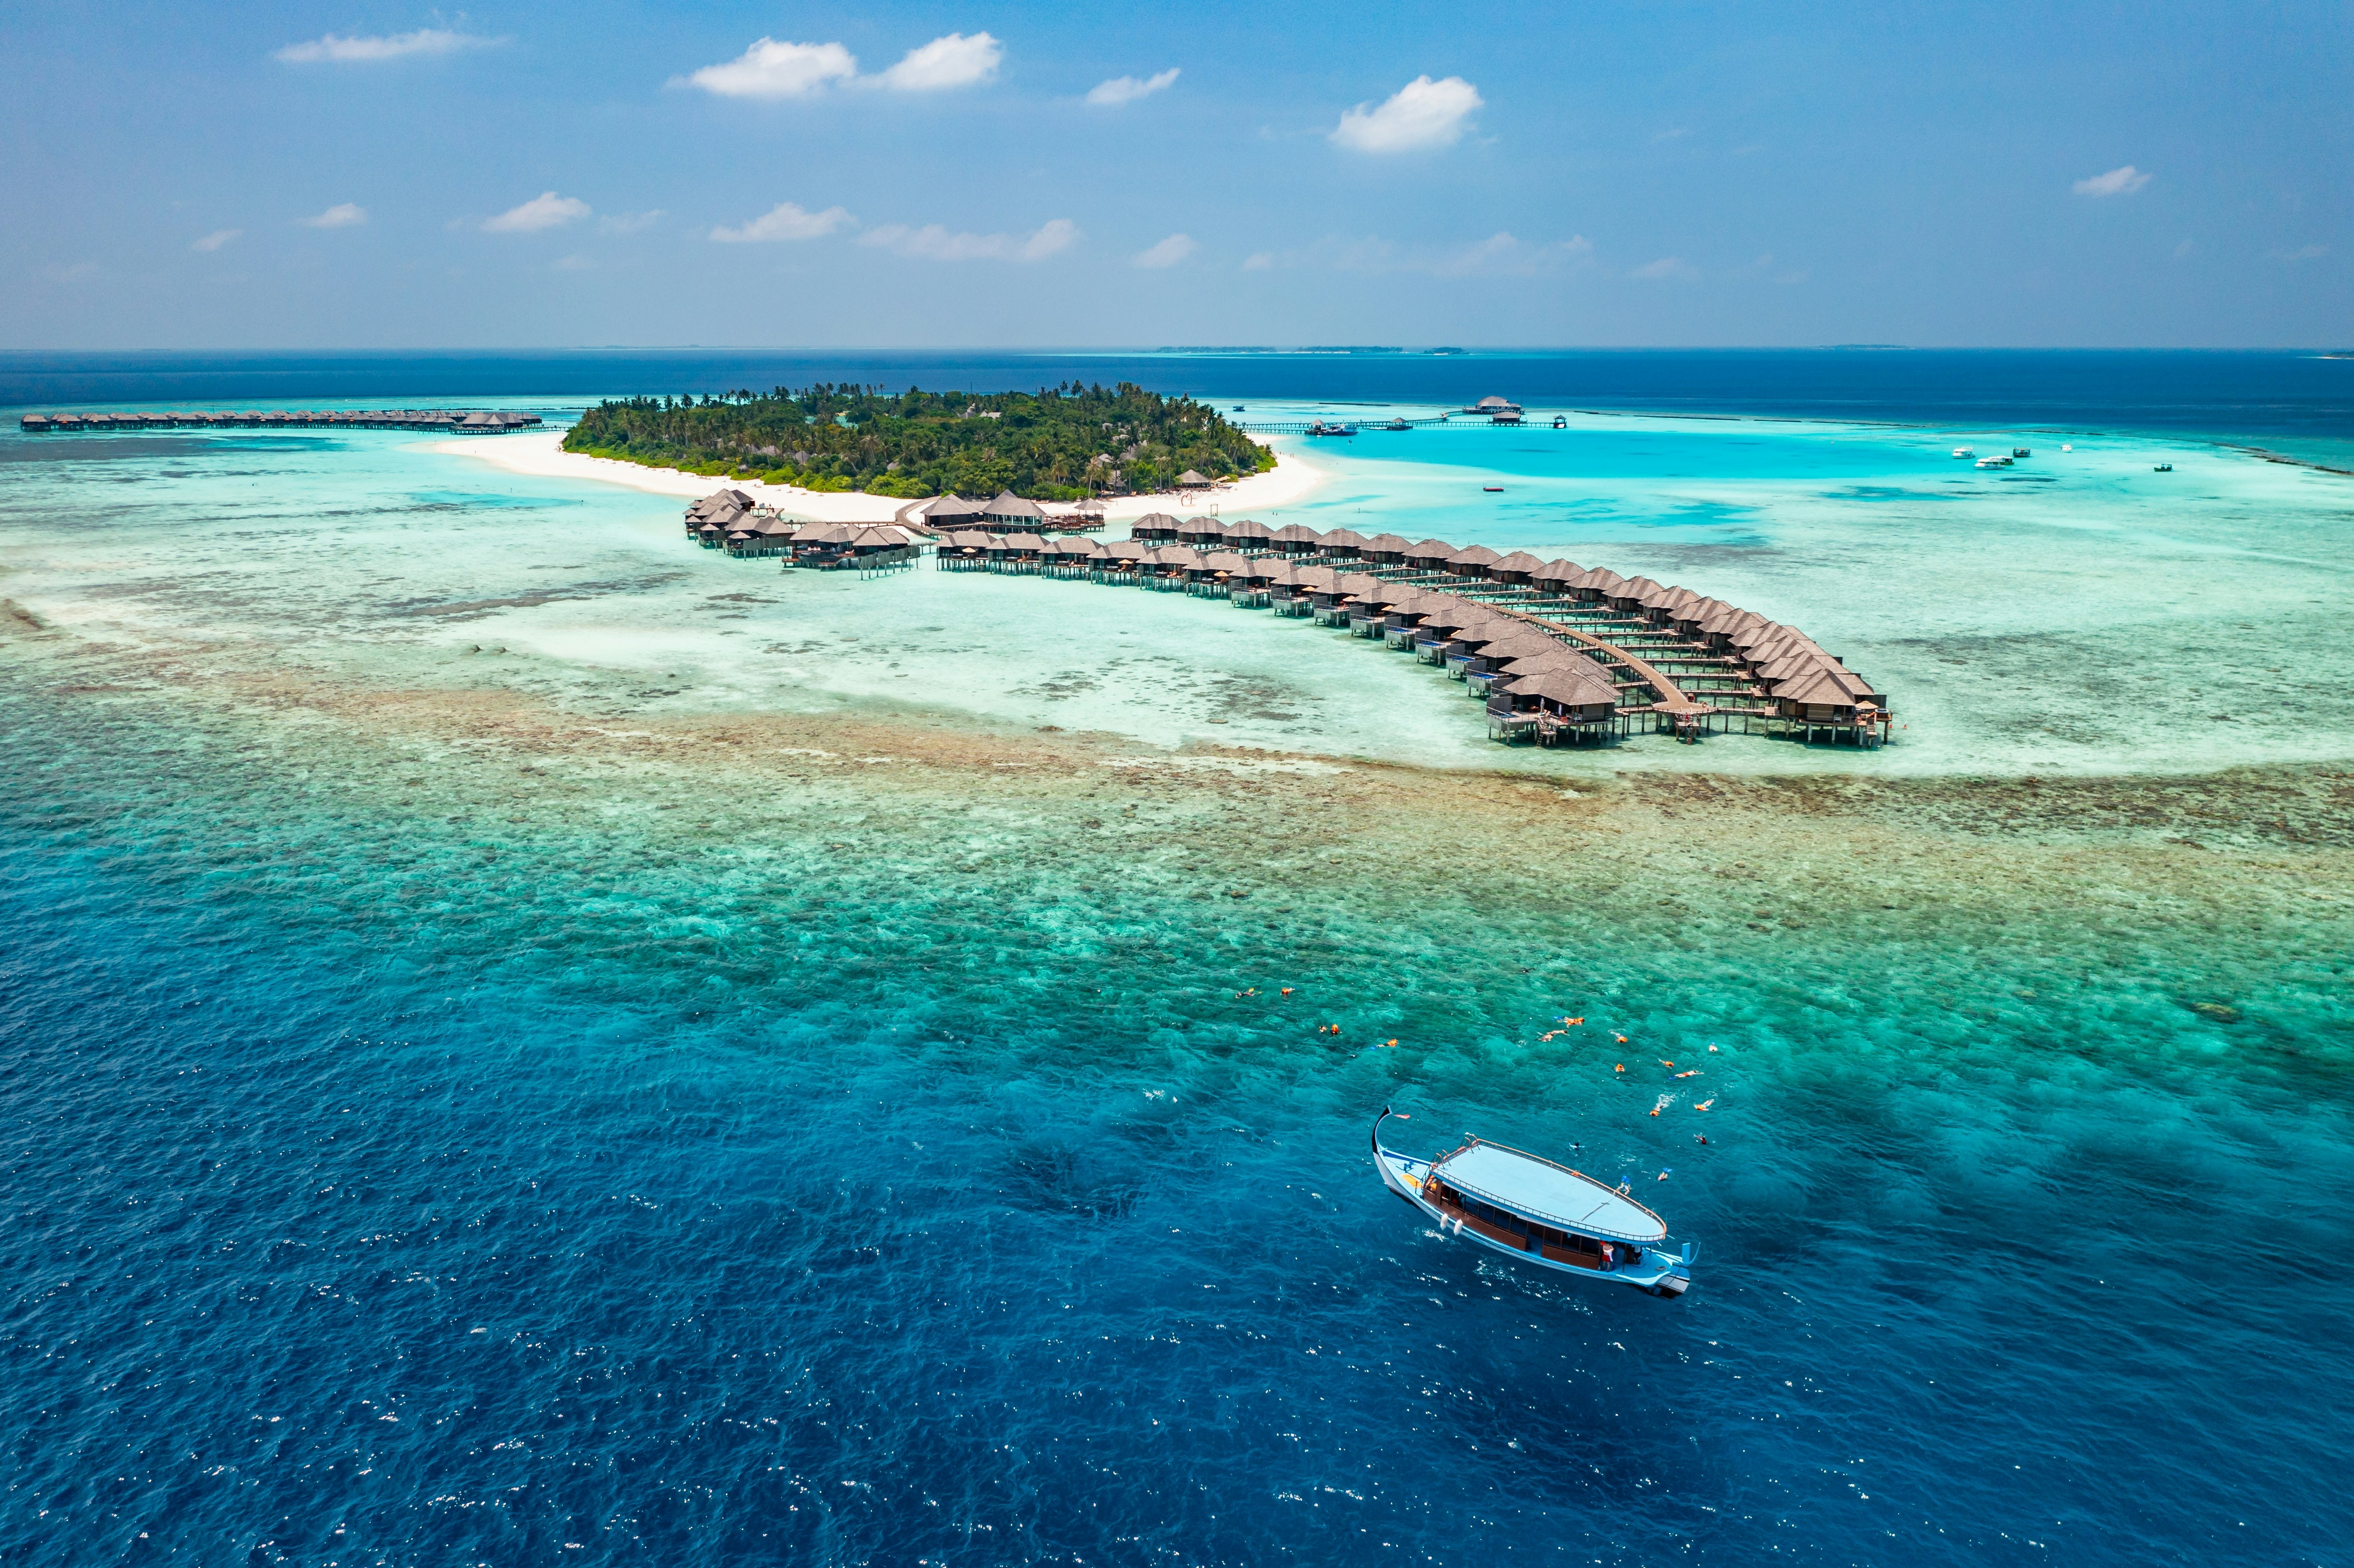 Le Maldive hanno un ecosistema molto fragile di cui dobbiamo tenere conto non solo quando siamo all'ancora, ma anche quando navighiamo.